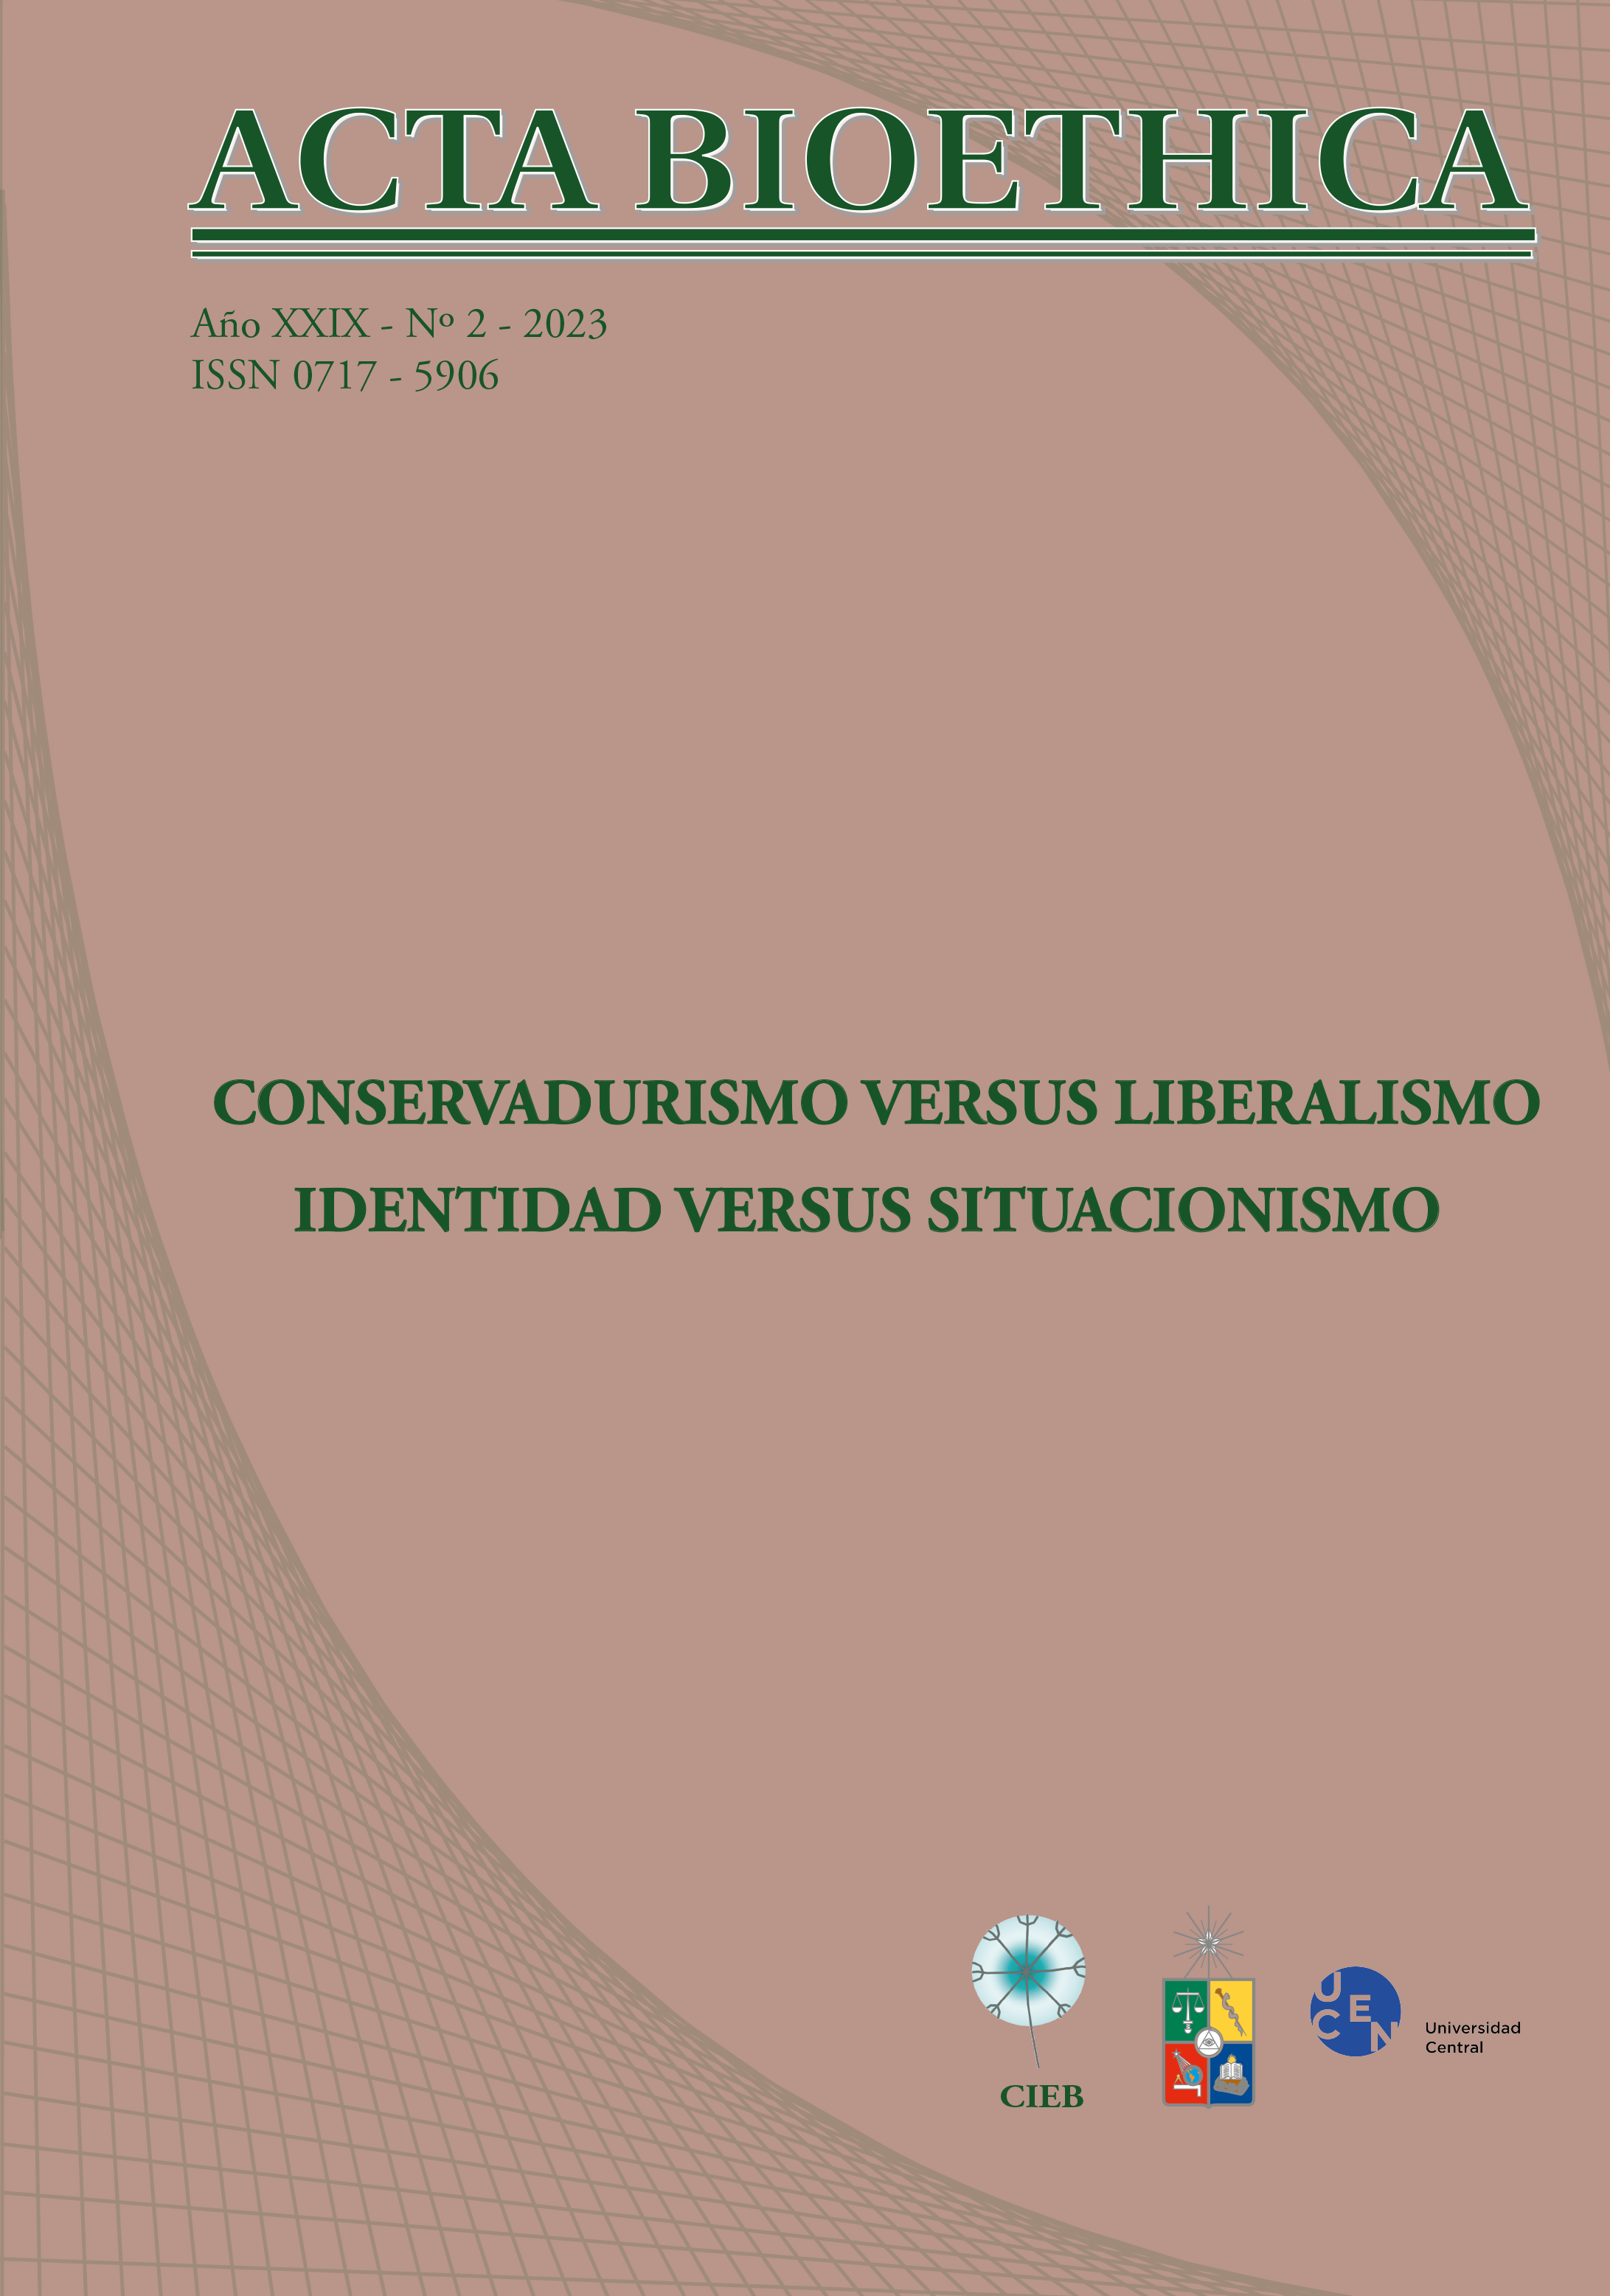 							View Vol. 29 No. 2 (2023): CONSERVADURISMO VERSUS LIBERALISMO. IDENTIDAD VERSUS SITUACIONISMO
						